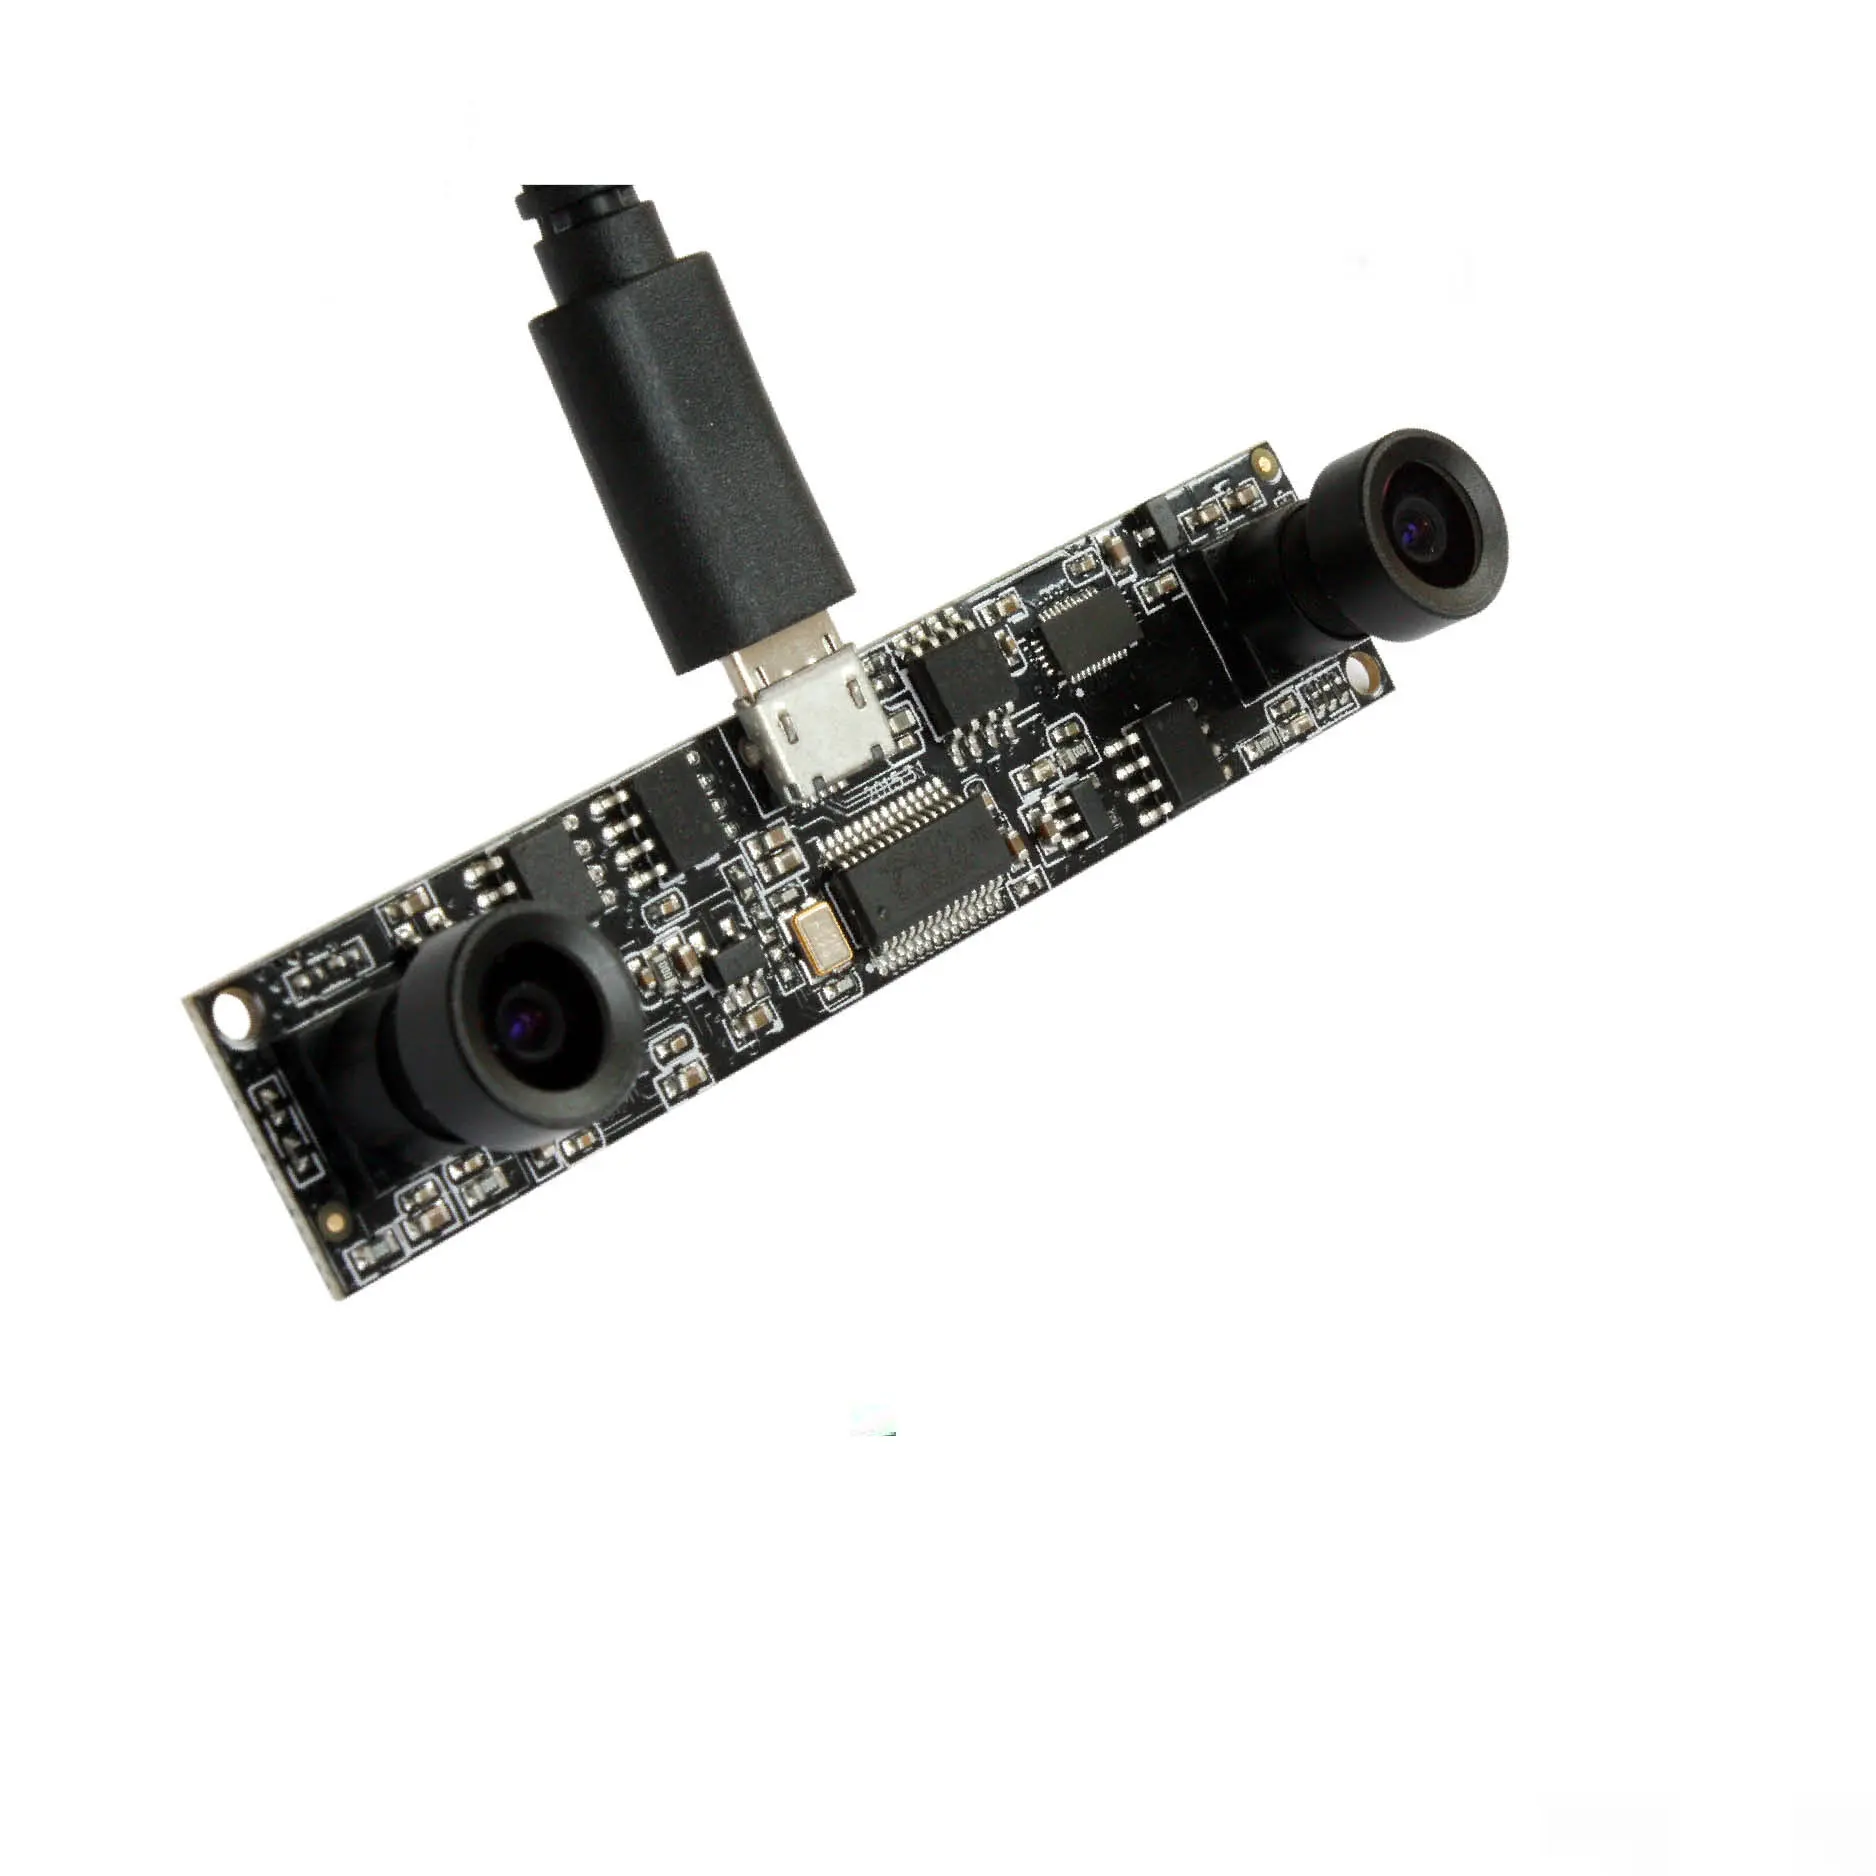 Цветная веб-камера ELP HD UVC CMOS OV9712 с двойным объективом 3D USB стереокамера для VR 3D камеры, 3D-принтера